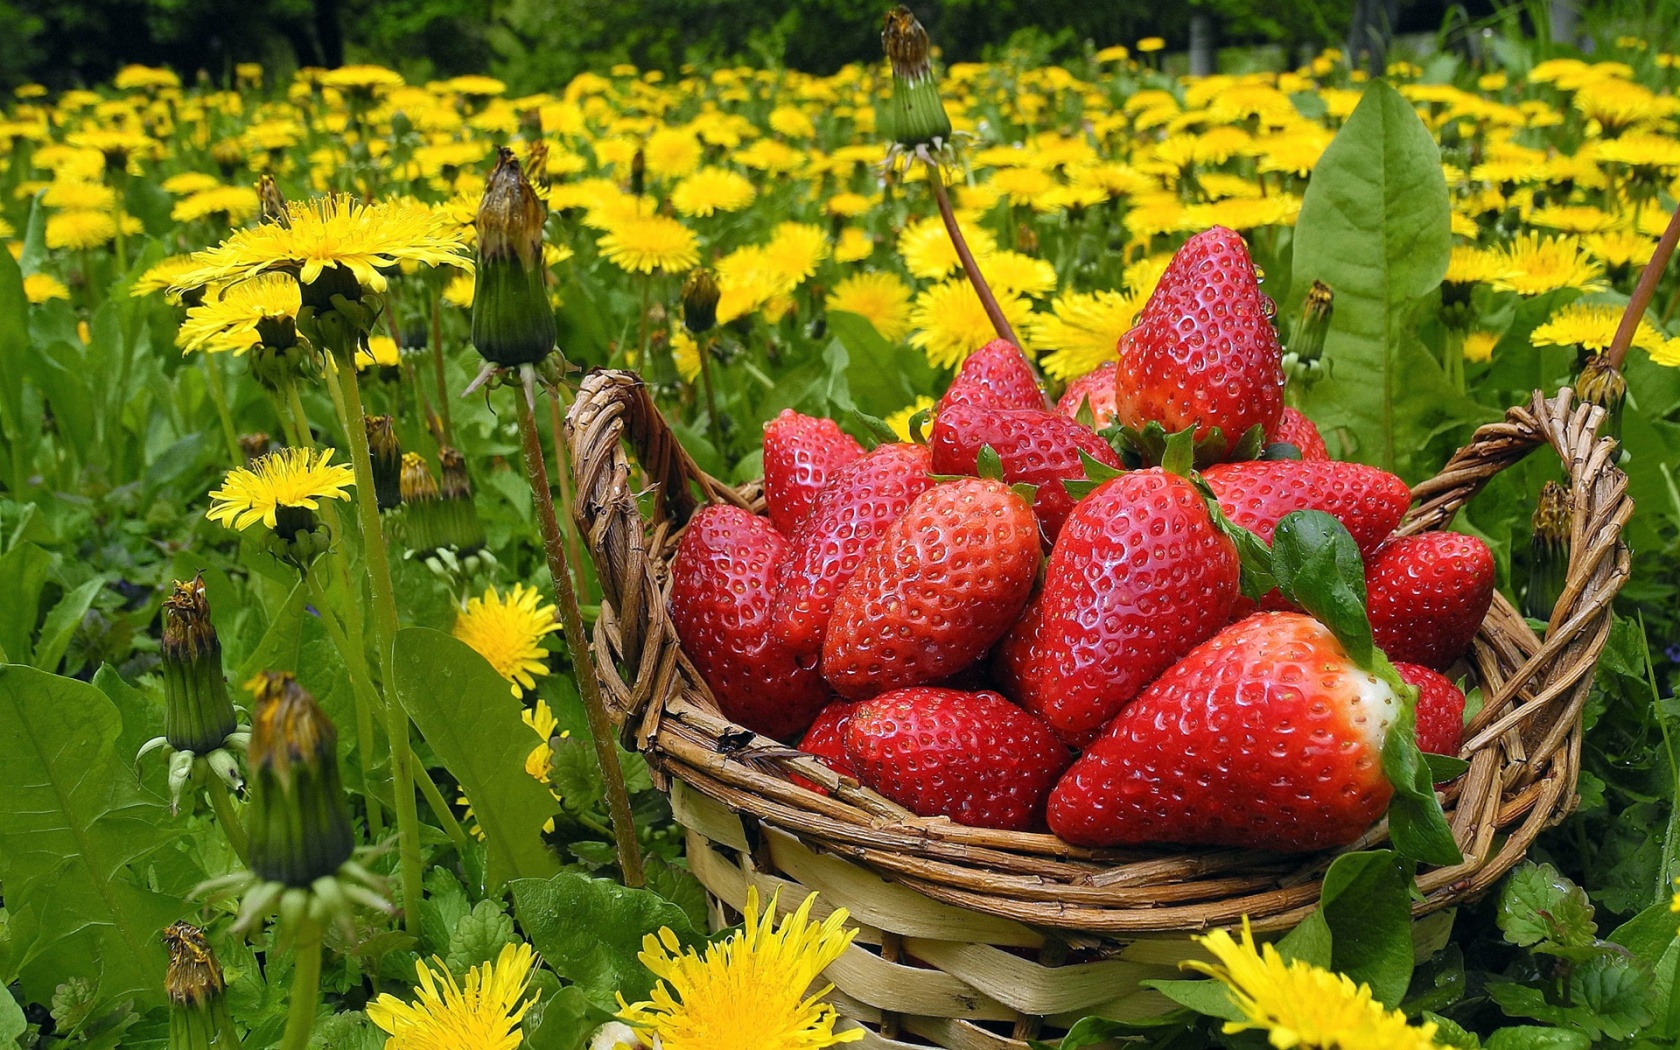 Strawberries In Basket And Dandelions